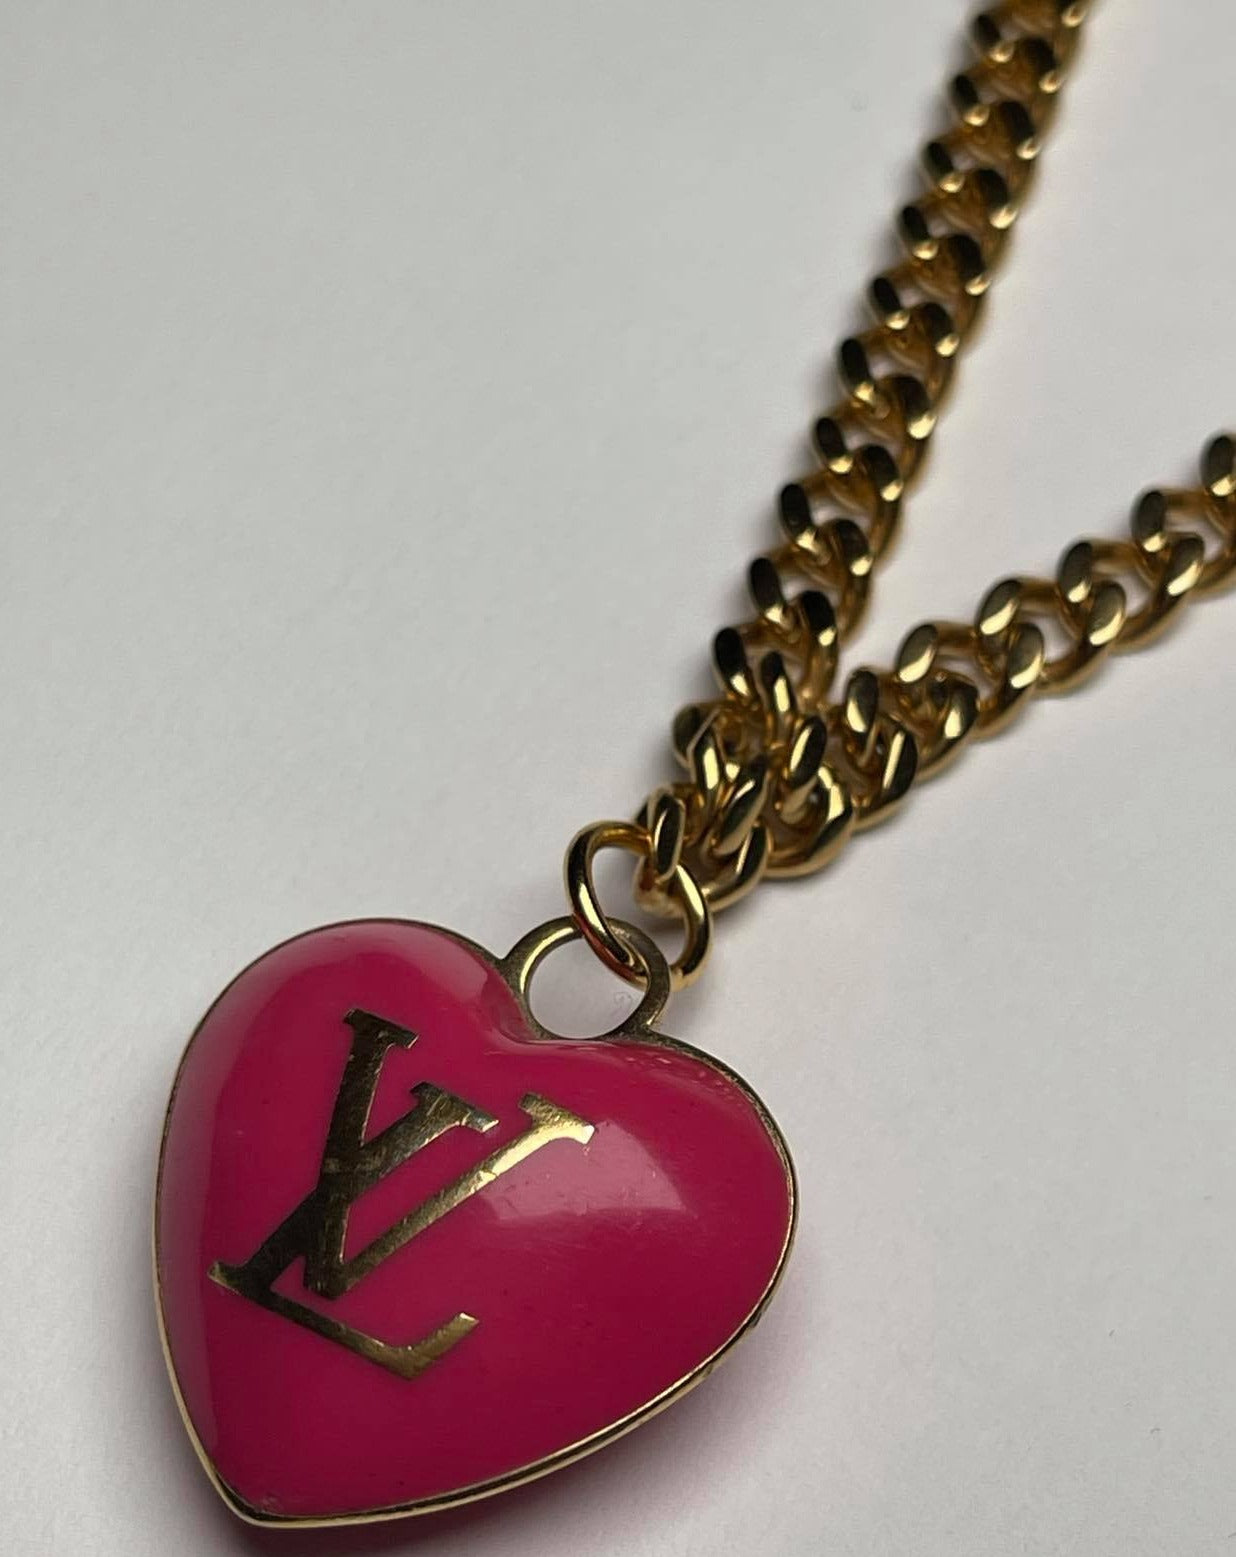 Louis Vuitton LV Heart Pendant Necklace  Necklace, Pendant, Heart pendant  necklace